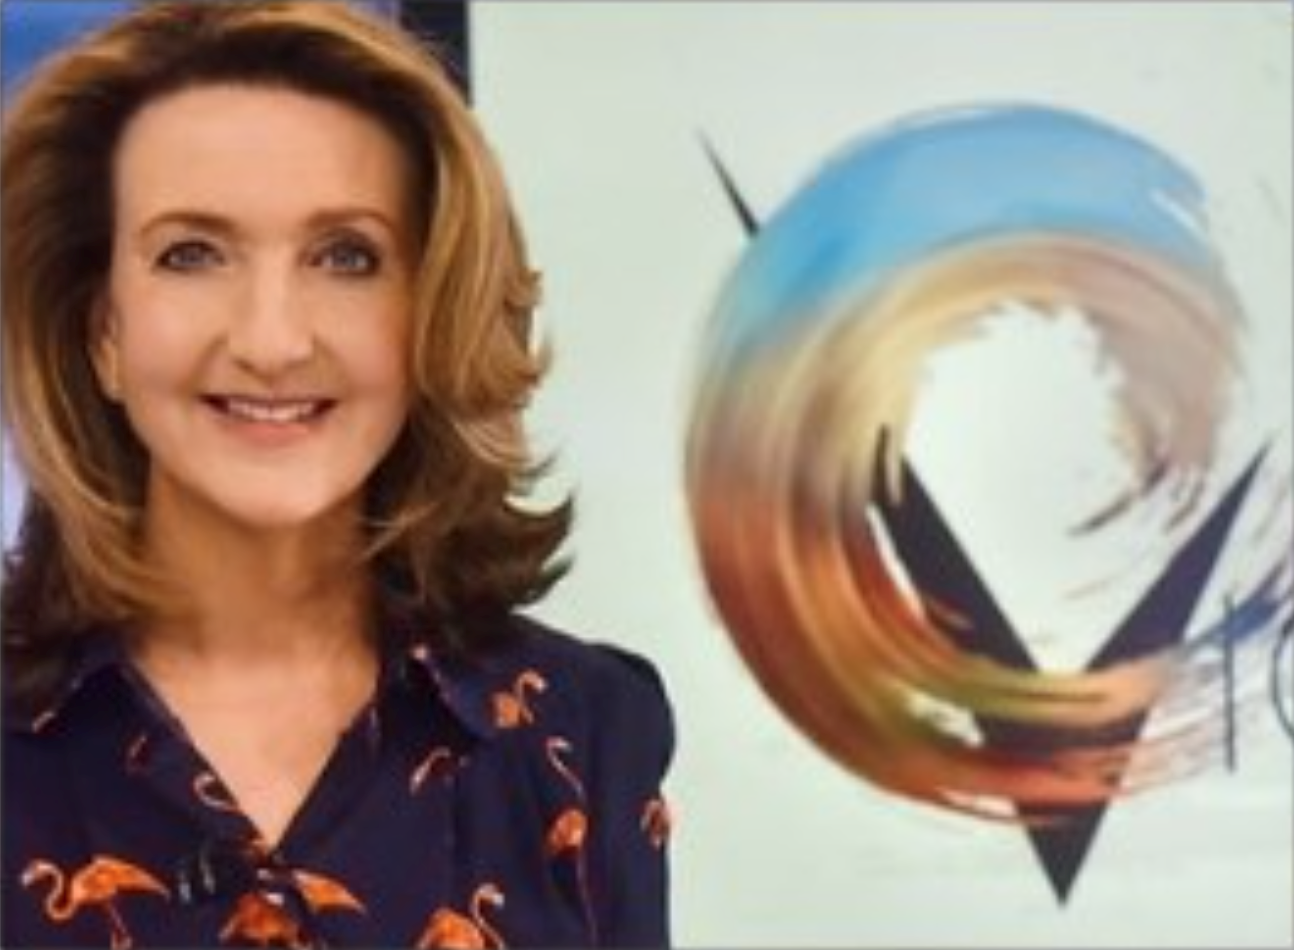 Victoria Derbyshire, a female TV presenter, smiling at the camera